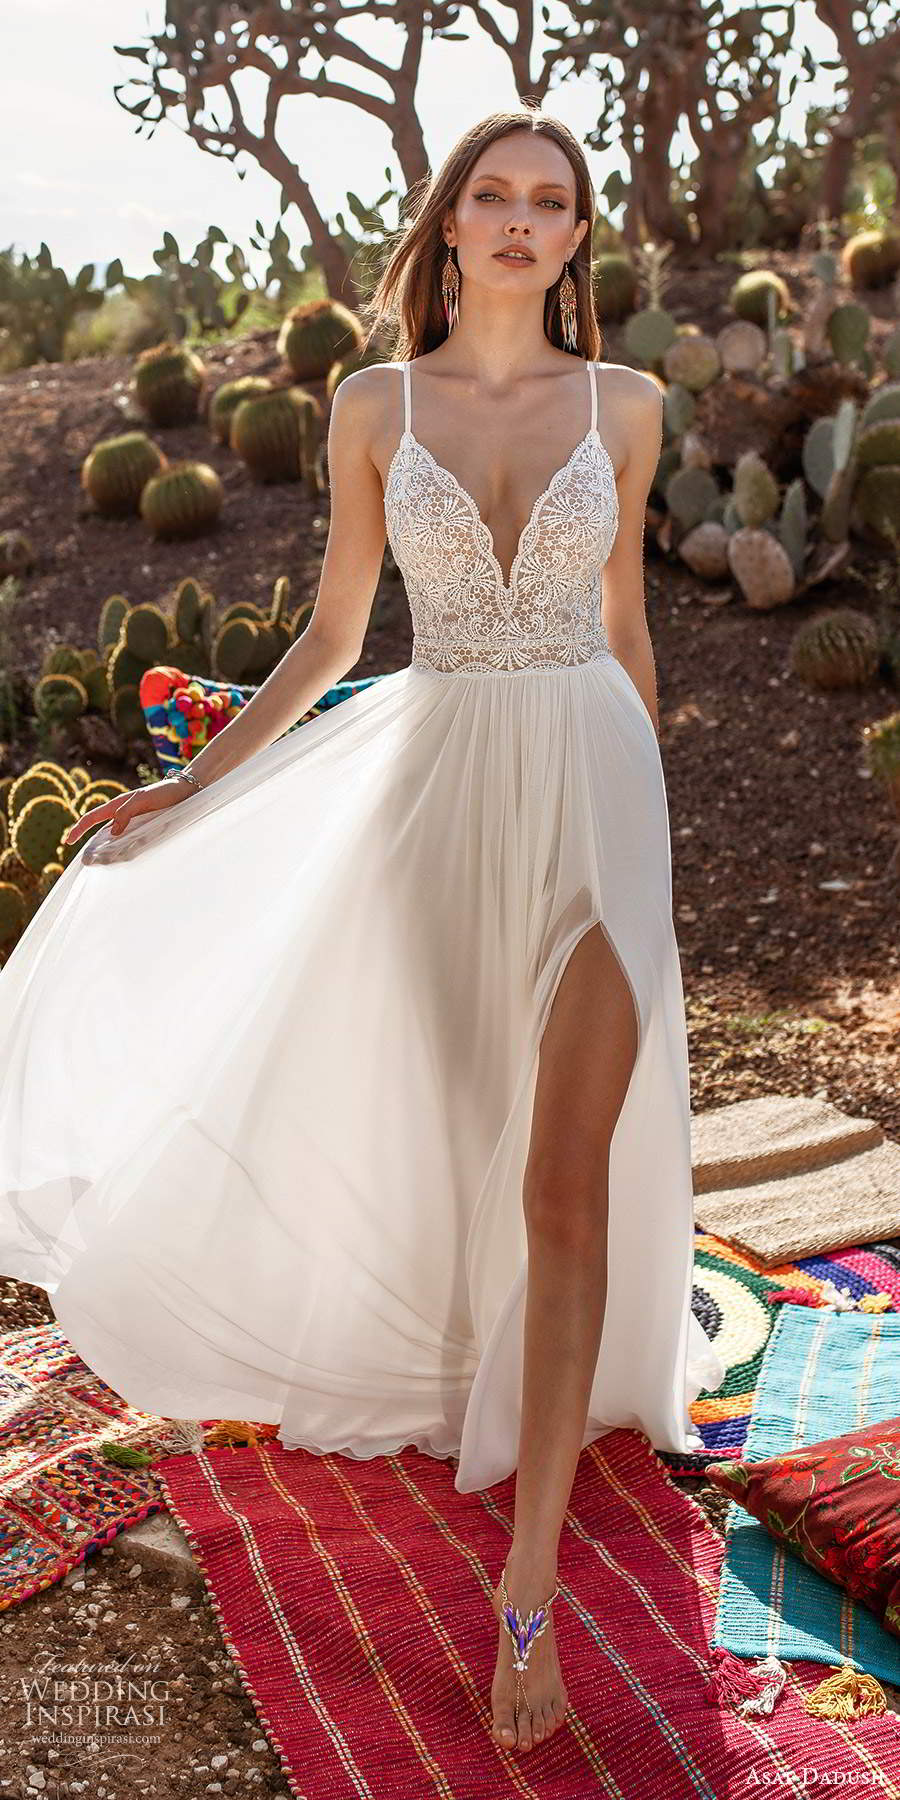 asaf dadush 2020 bridal sleeveless thin straps sweetheart neckline embellished lace bodice a line wedding dress open back (8) mv